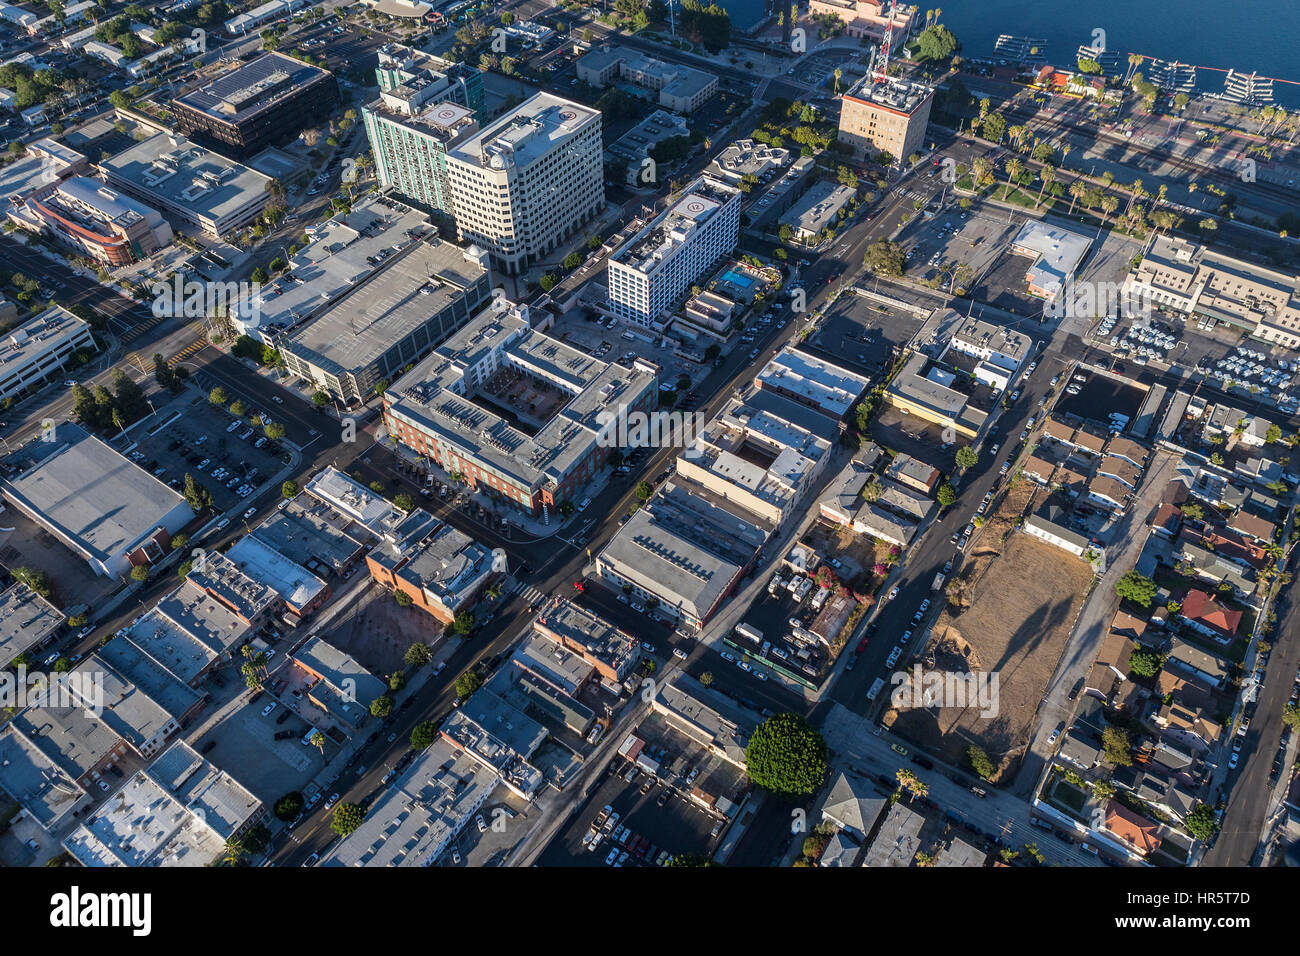 Los Angeles, Kalifornien, USA - 16. August 2016: Am Nachmittag Luftaufnahme der Innenstadt von San Pedro in der Stadt Los Angeles. Stockfoto